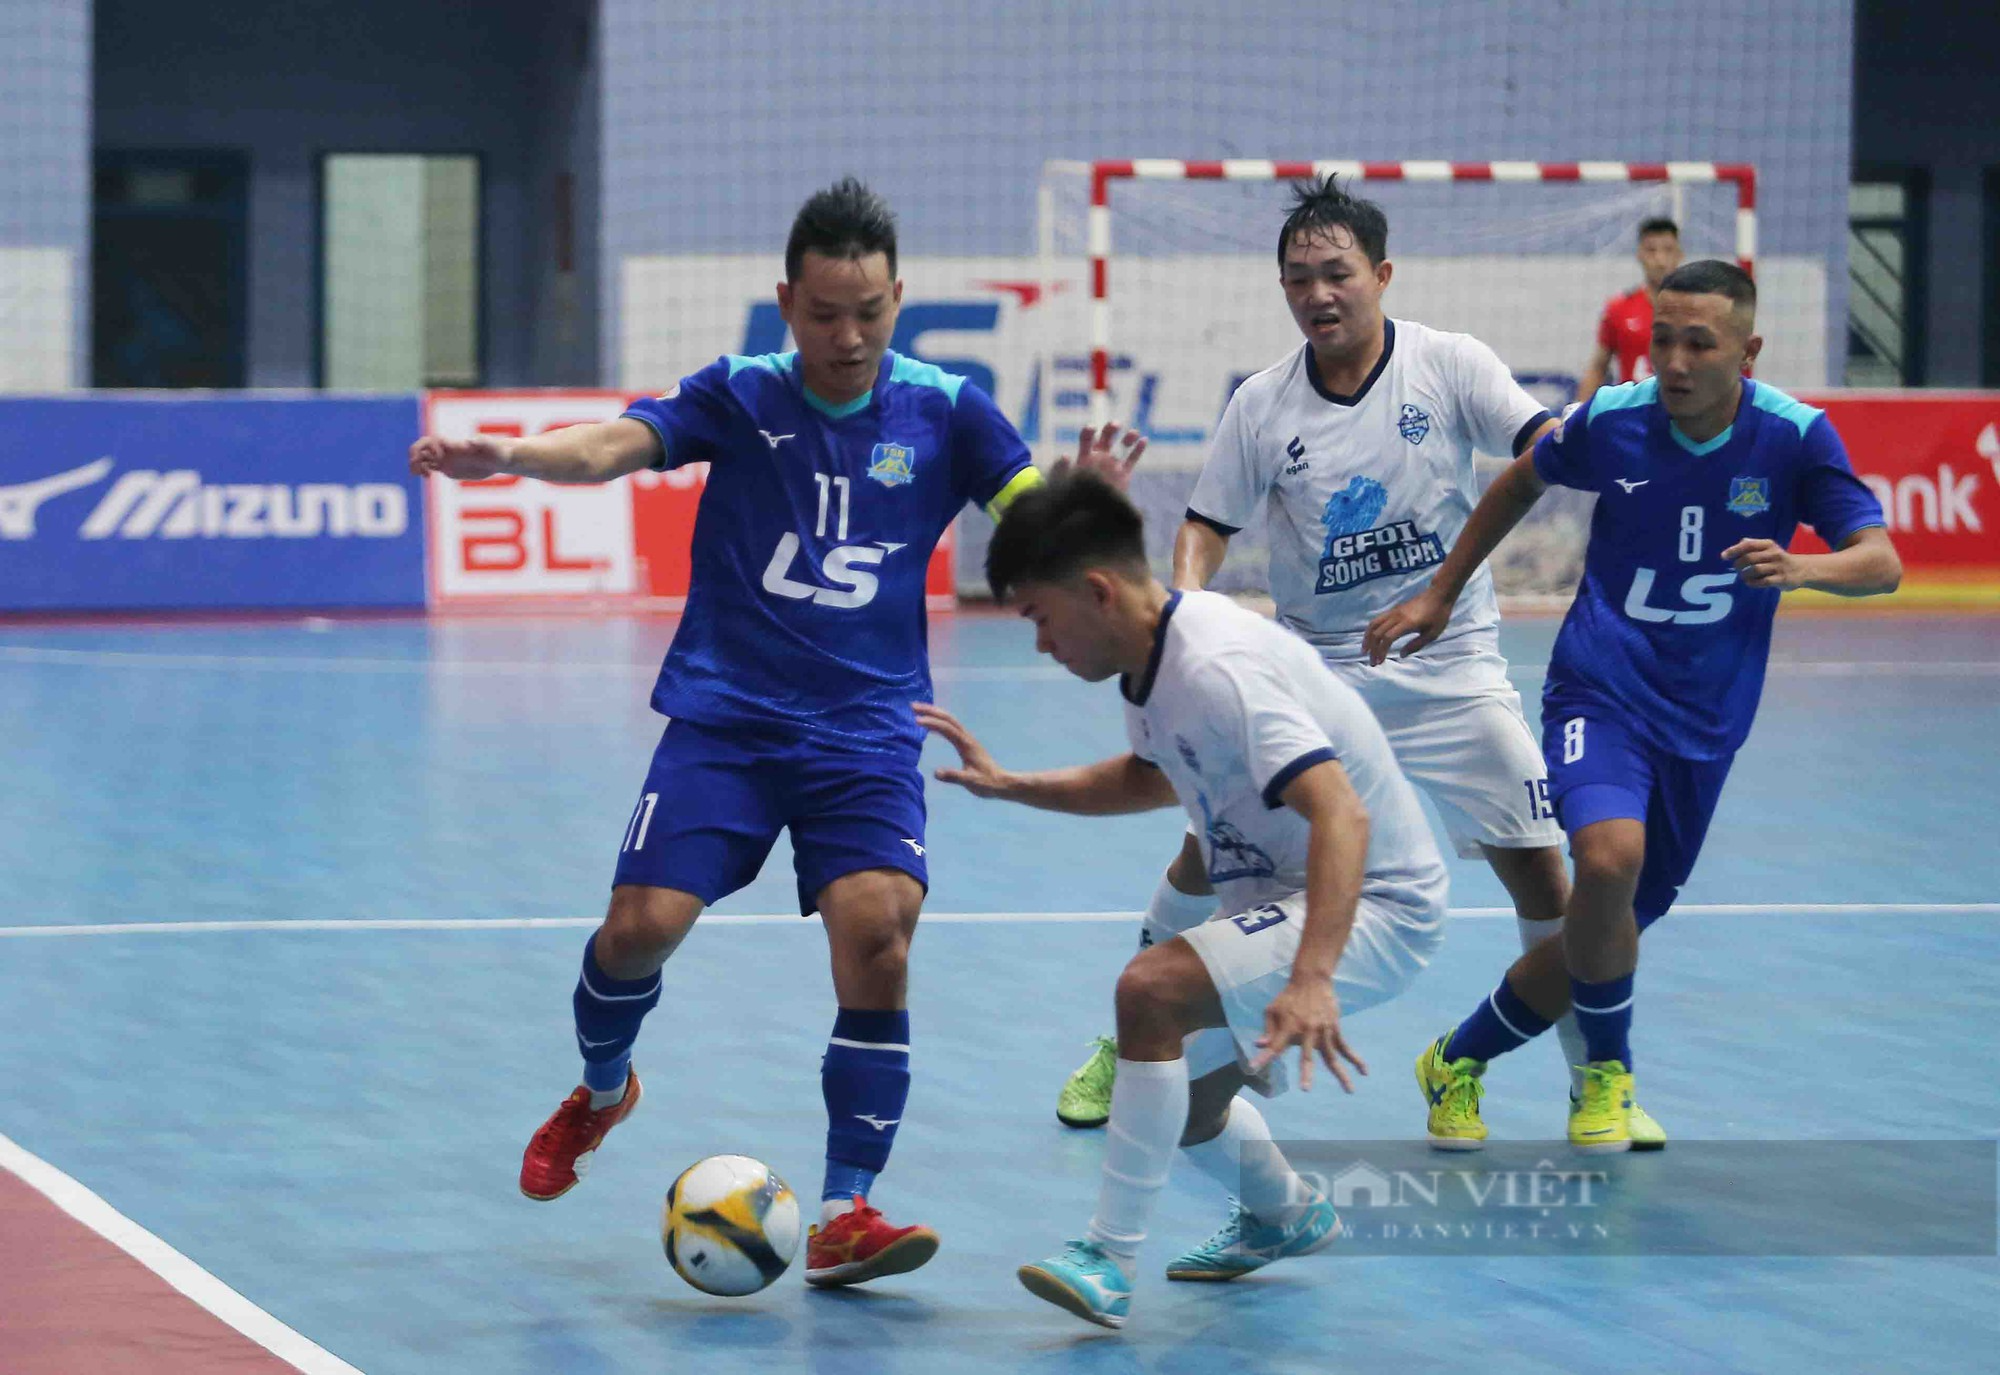 Hoà thót tim phút cuối, Thái Sơn Nam lên ngôi vô địch giải futsal quốc gia - Ảnh 1.